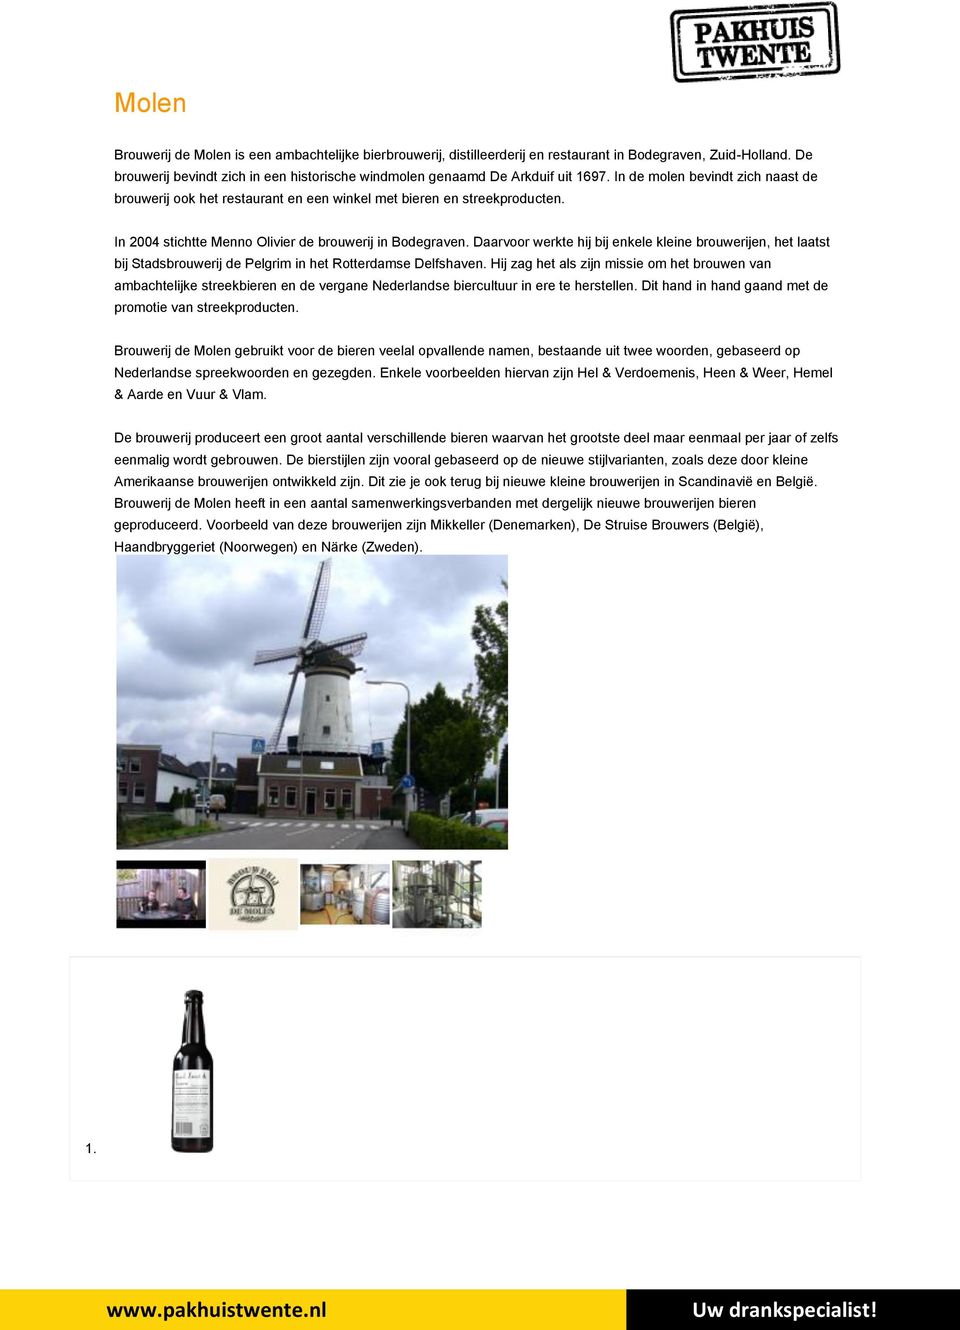 In 2004 stichtte Menno Olivier de brouwerij in Bodegraven. Daarvoor werkte hij bij enkele kleine brouwerijen, het laatst bij Stadsbrouwerij de Pelgrim in het Rotterdamse Delfshaven.